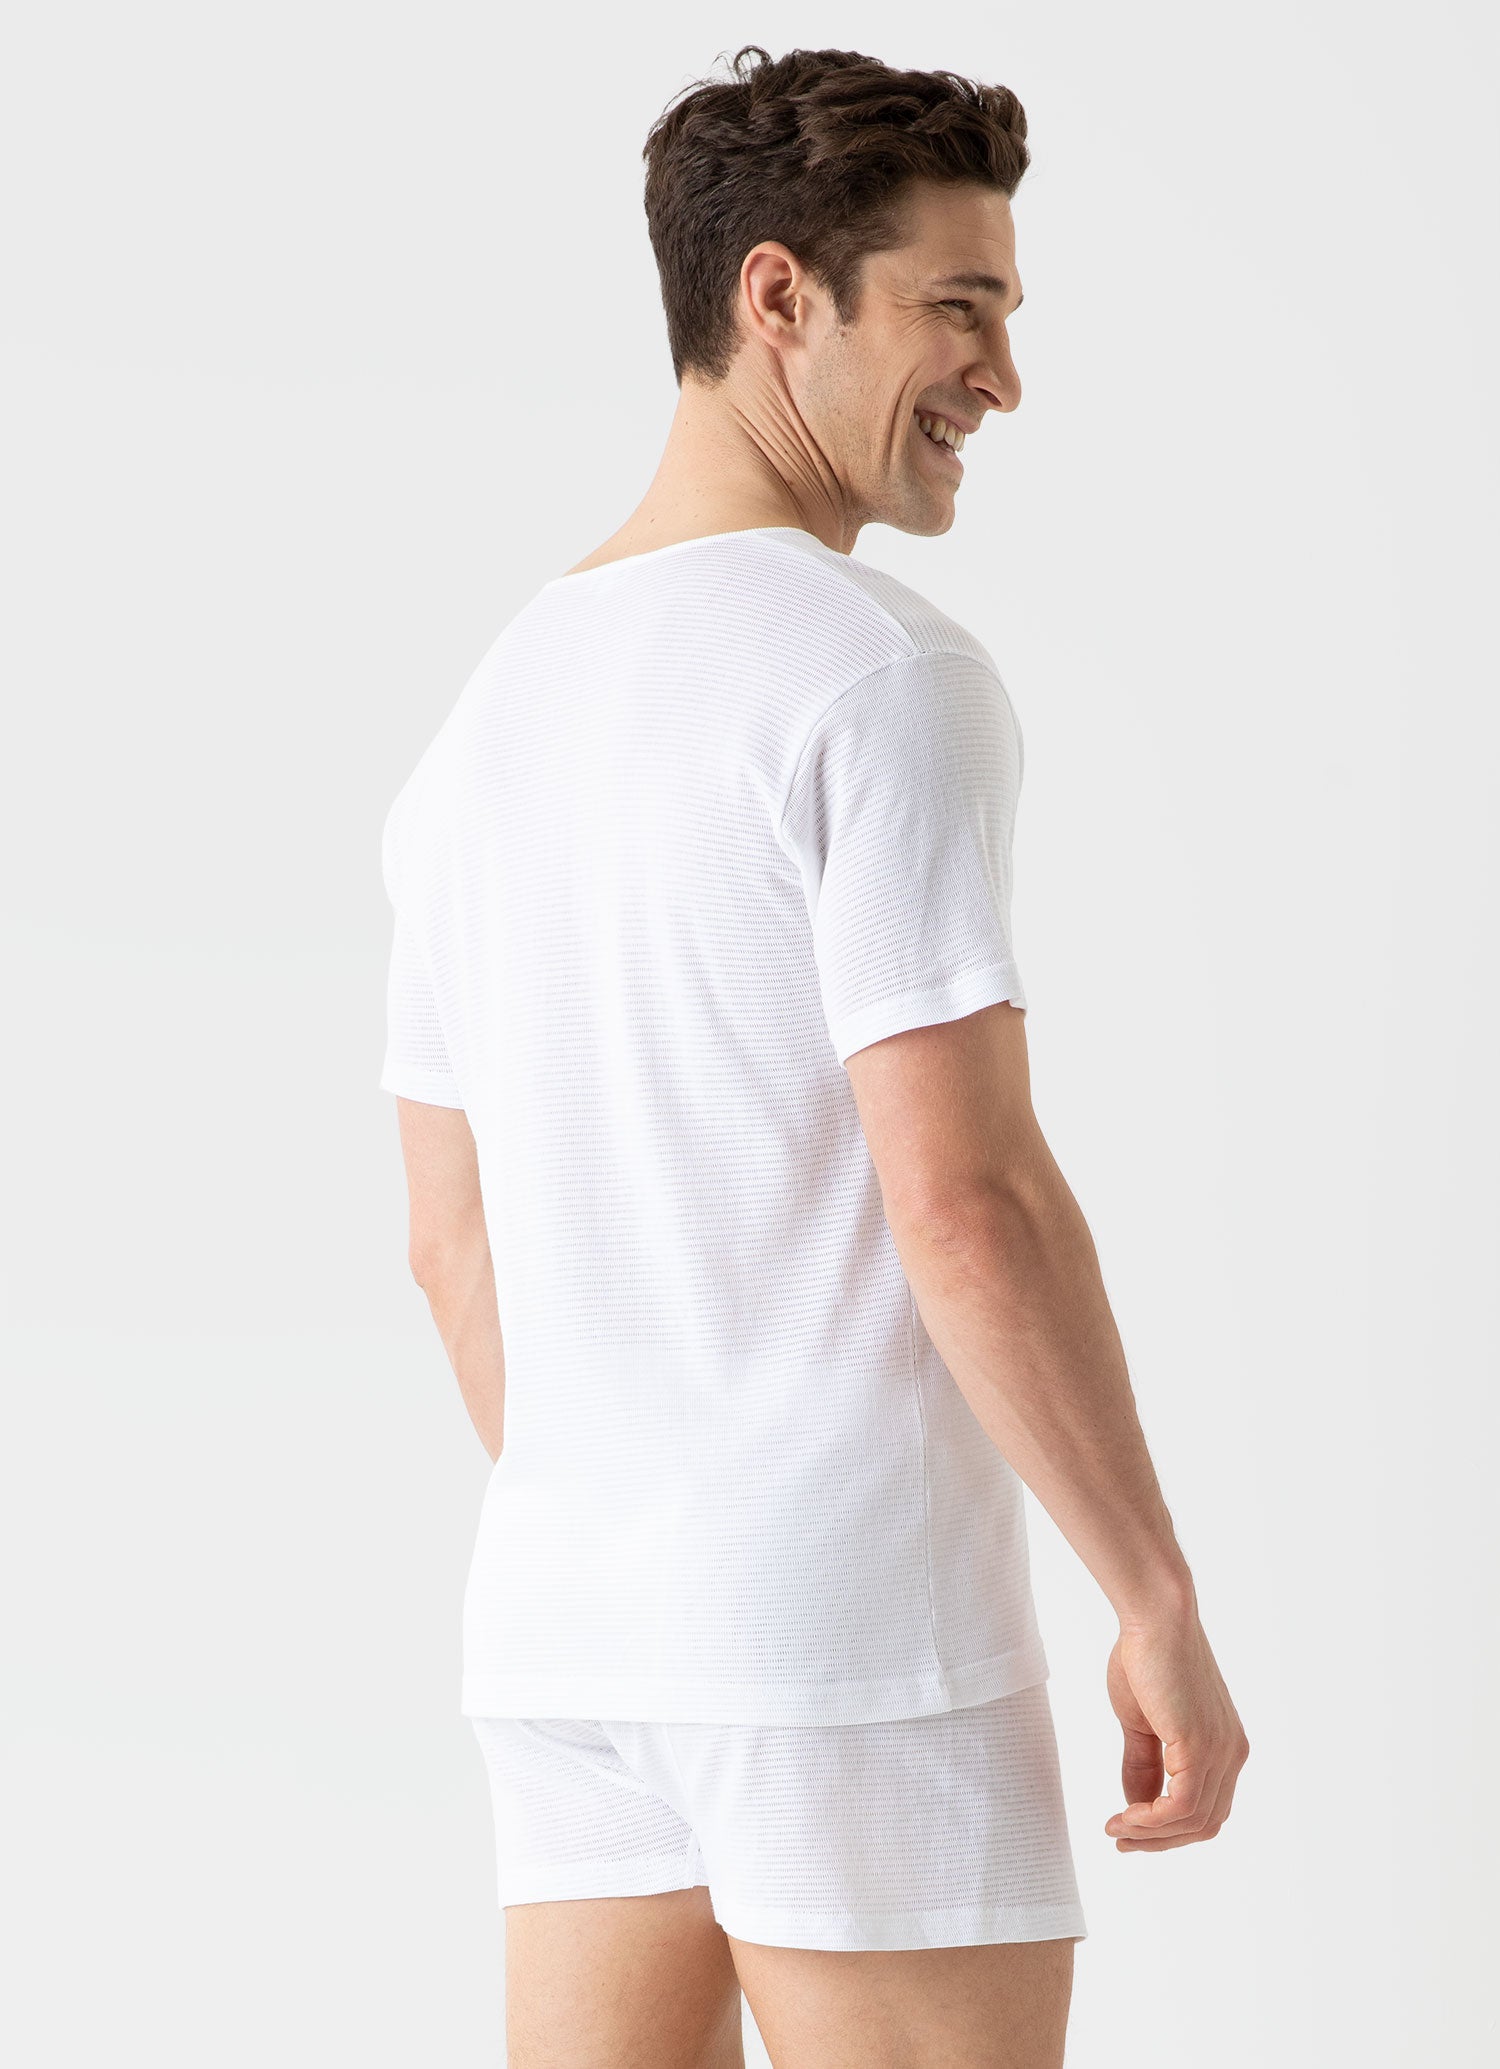 Men's Cellular Cotton V-Neck Underwear T-shirt in White